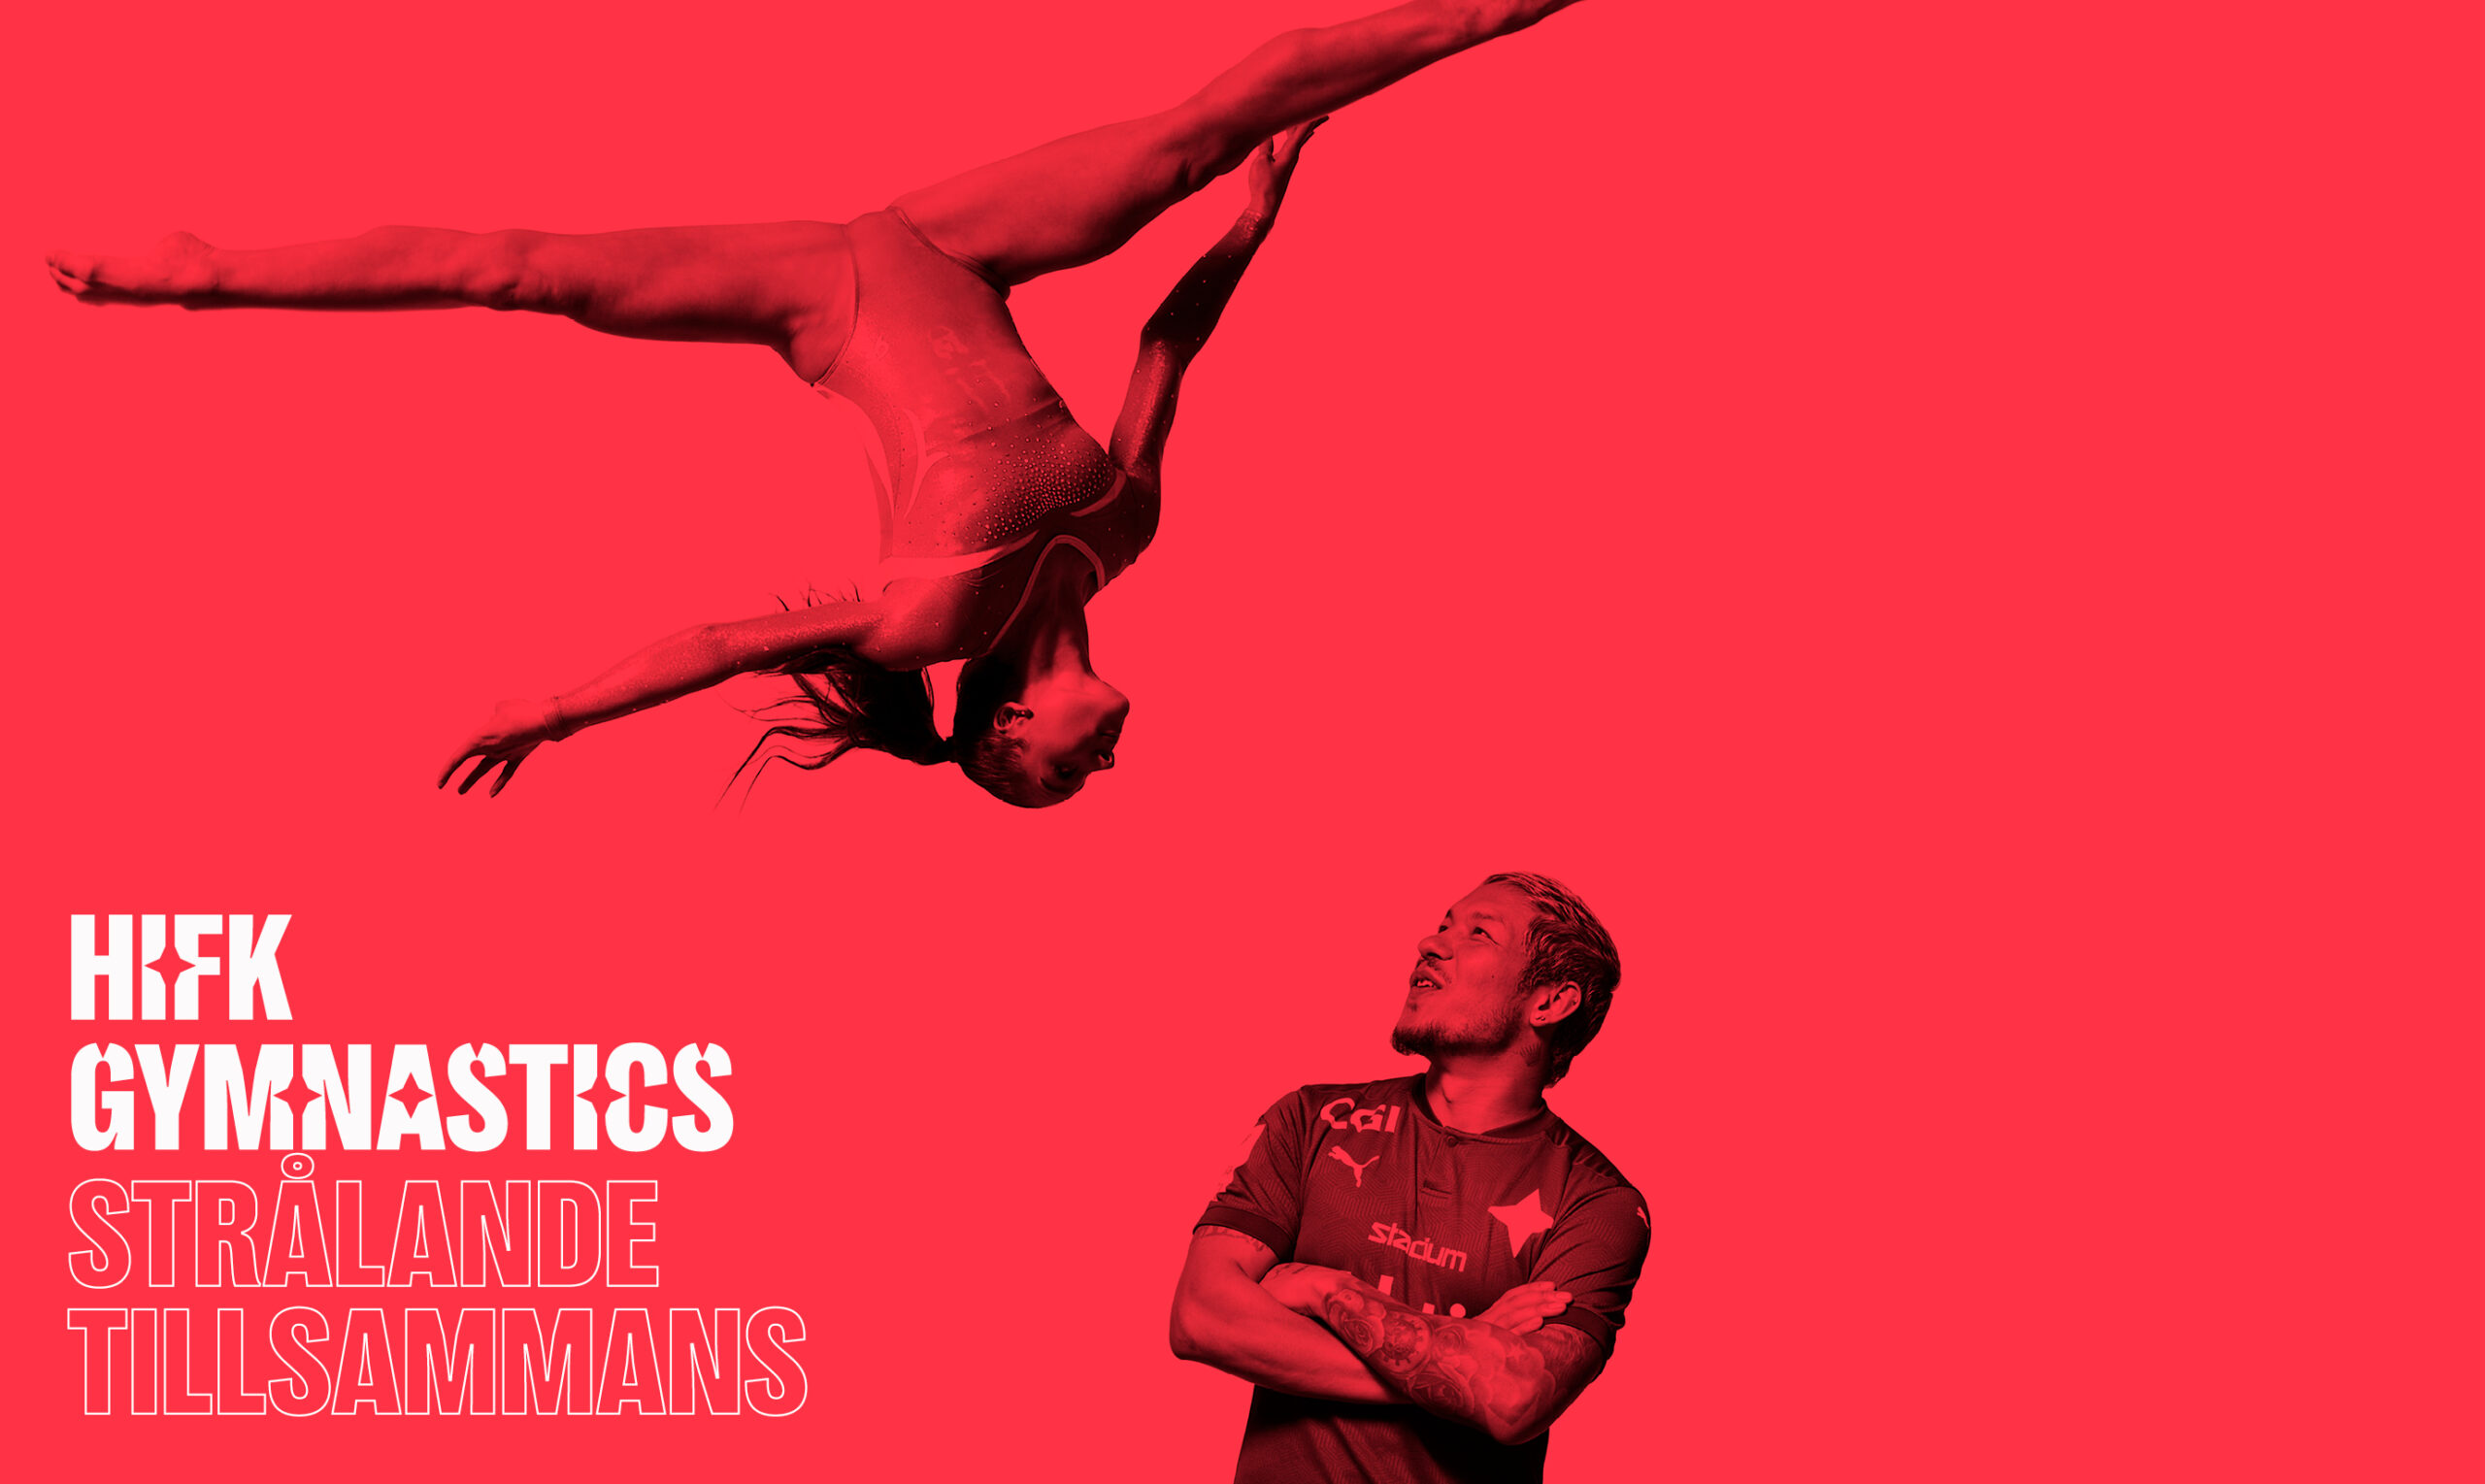 HIFK utvidgar sin verksamhet – HIFK Gymnastics blir föreningens nya gymnastiksektion